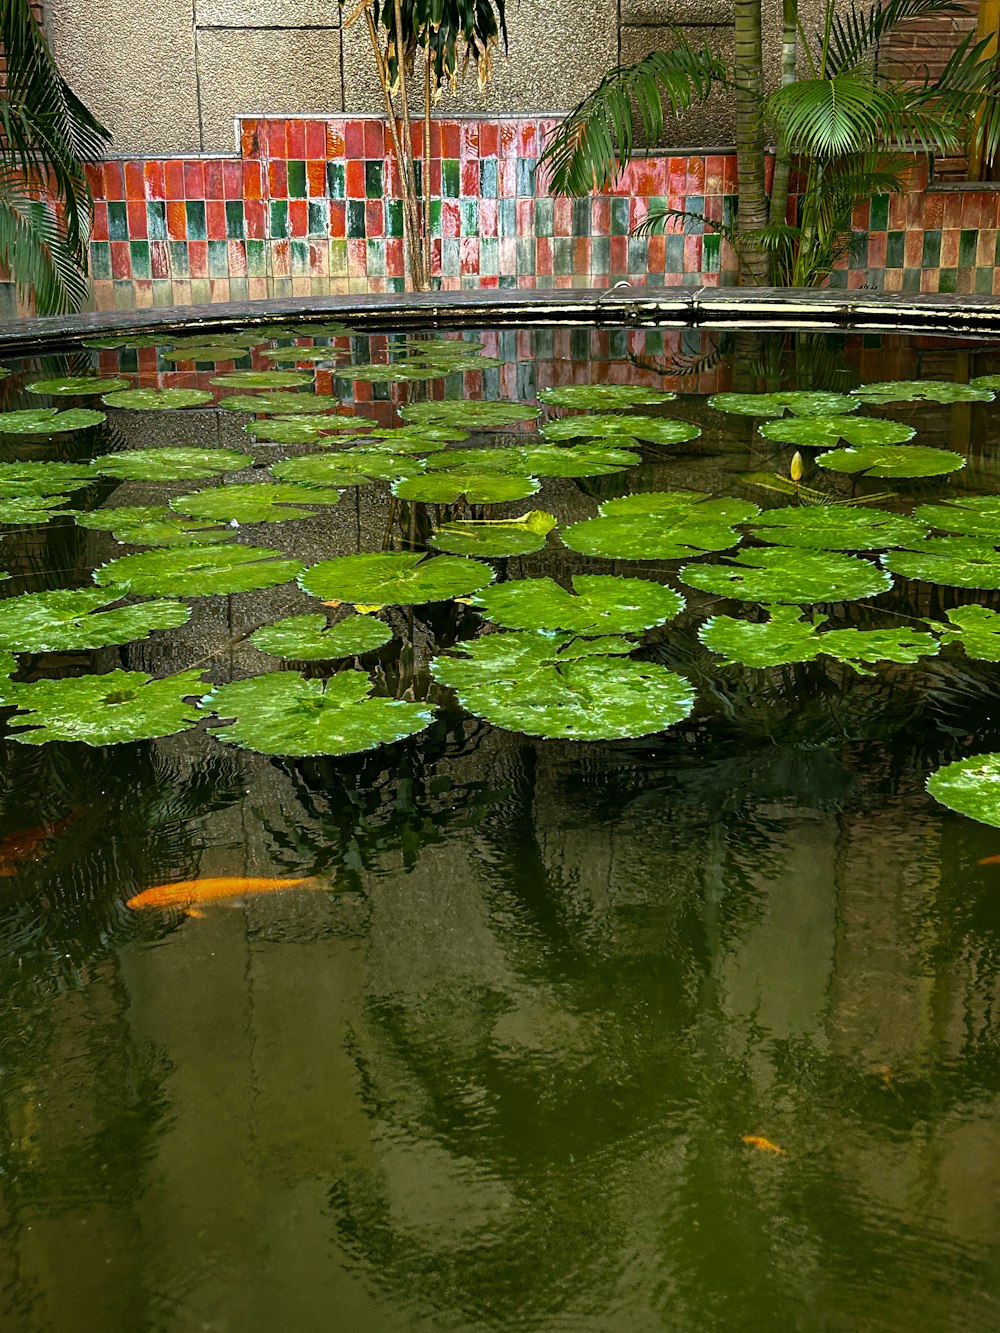 たくさんの緑の睡蓮でいっぱいの池